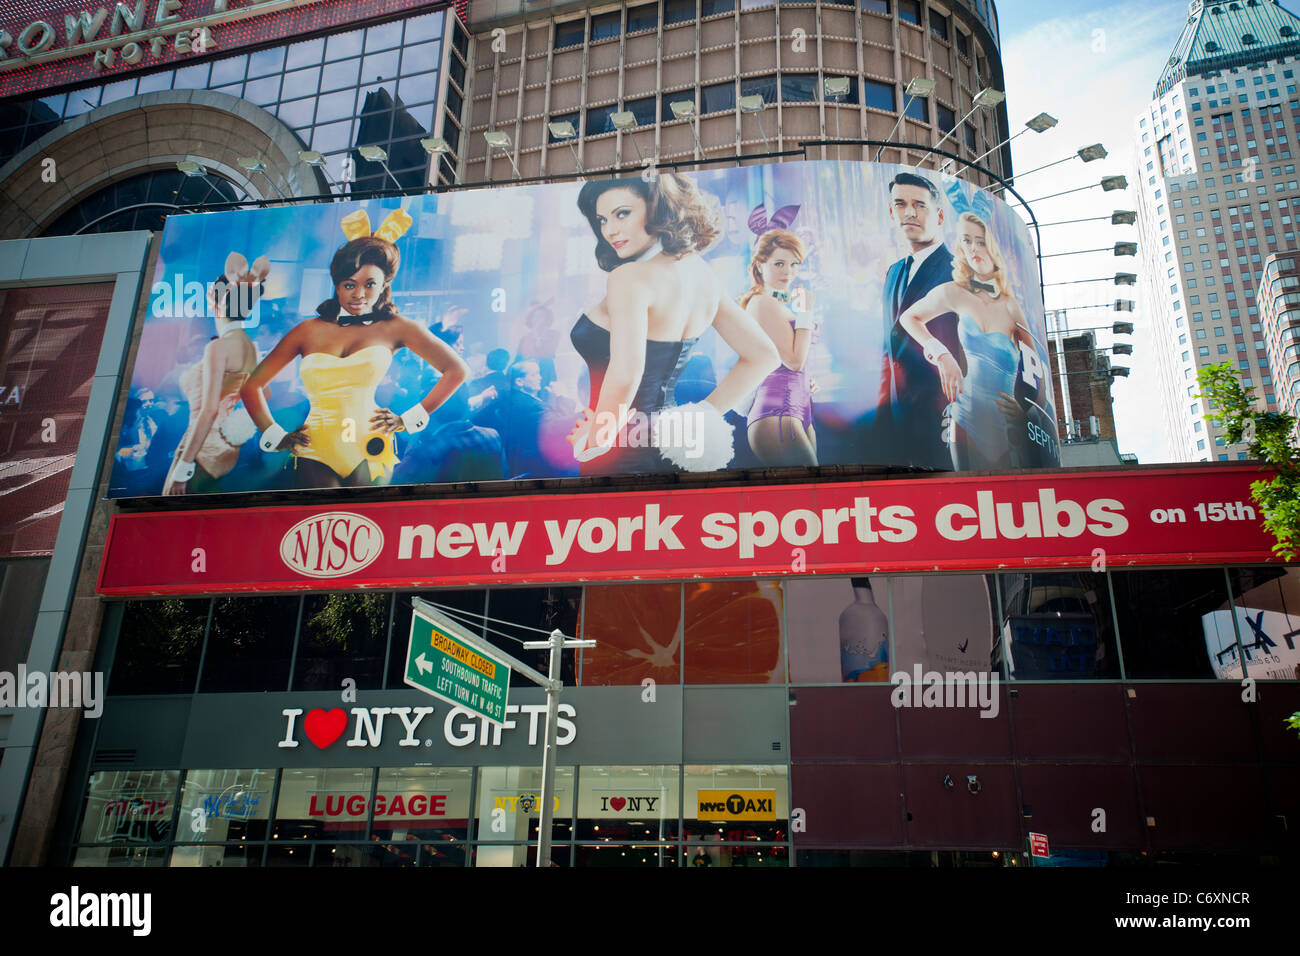 La publicité sur des panneaux publicitaires pour le programme de télévision NBC, le Playboy Club Banque D'Images